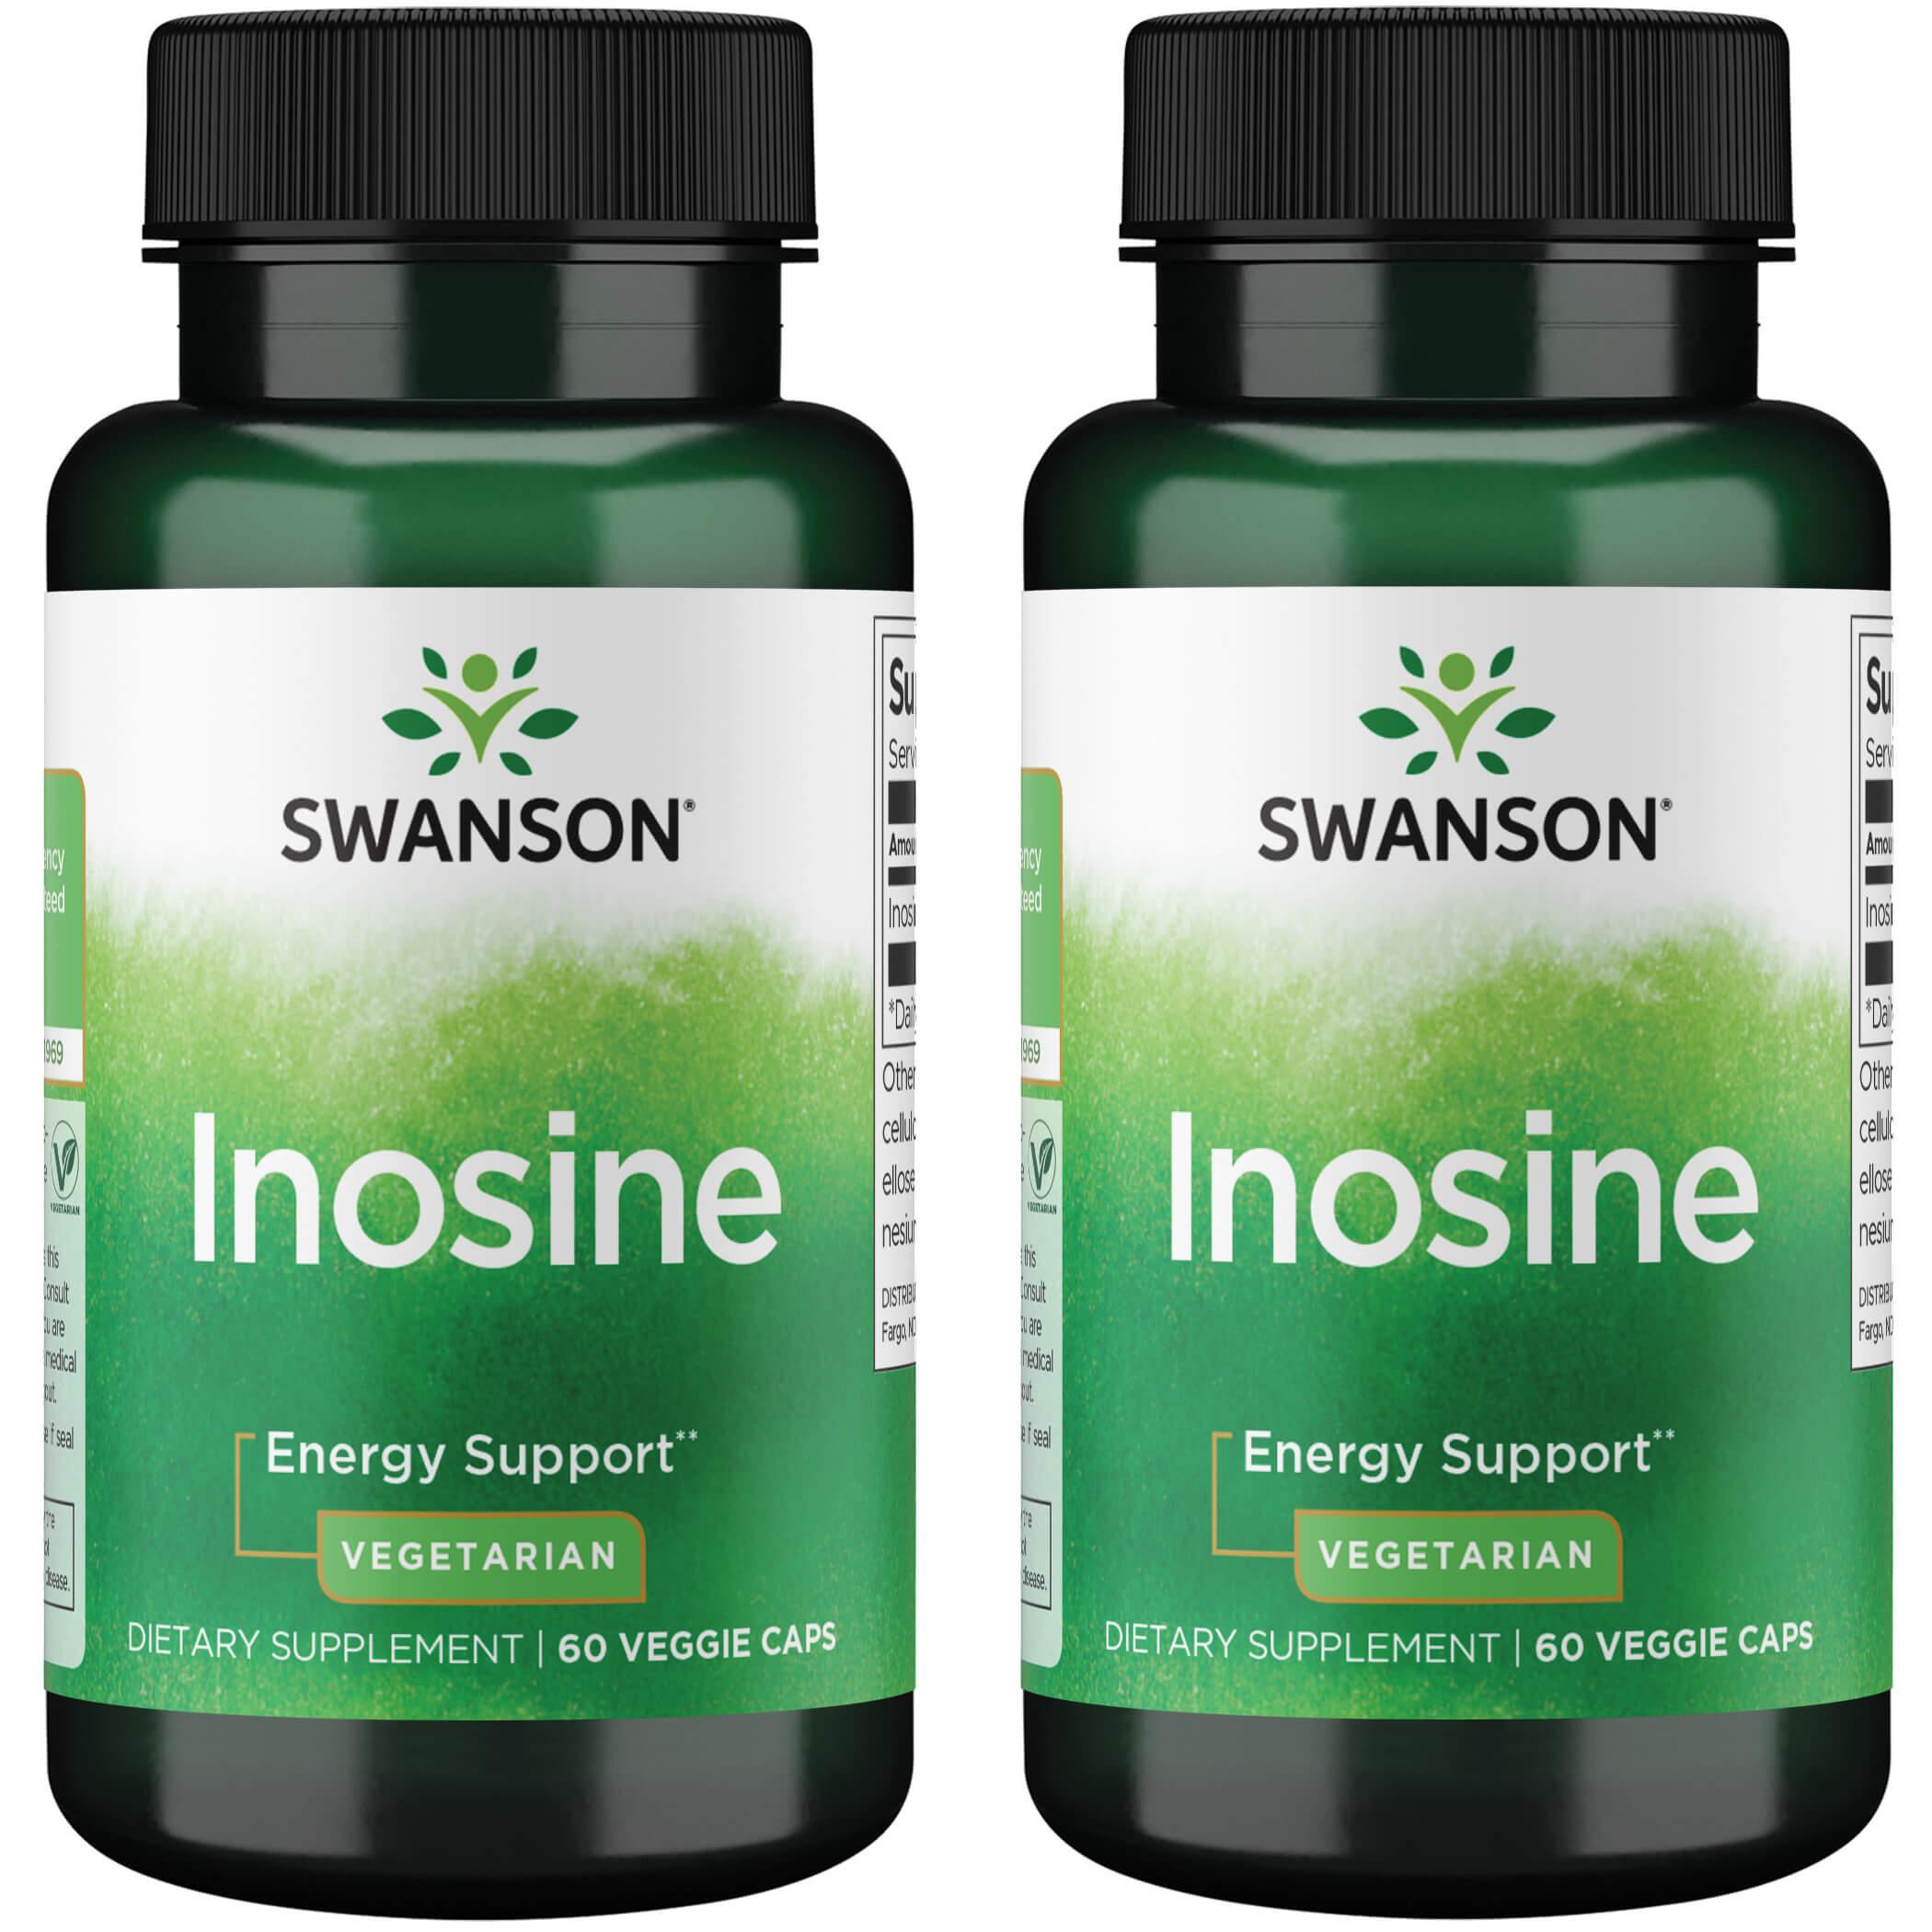 Swanson Premium Inosine - Vegetarian 2 Pack Supplement Vitamin 500 mg 60 Veg Caps